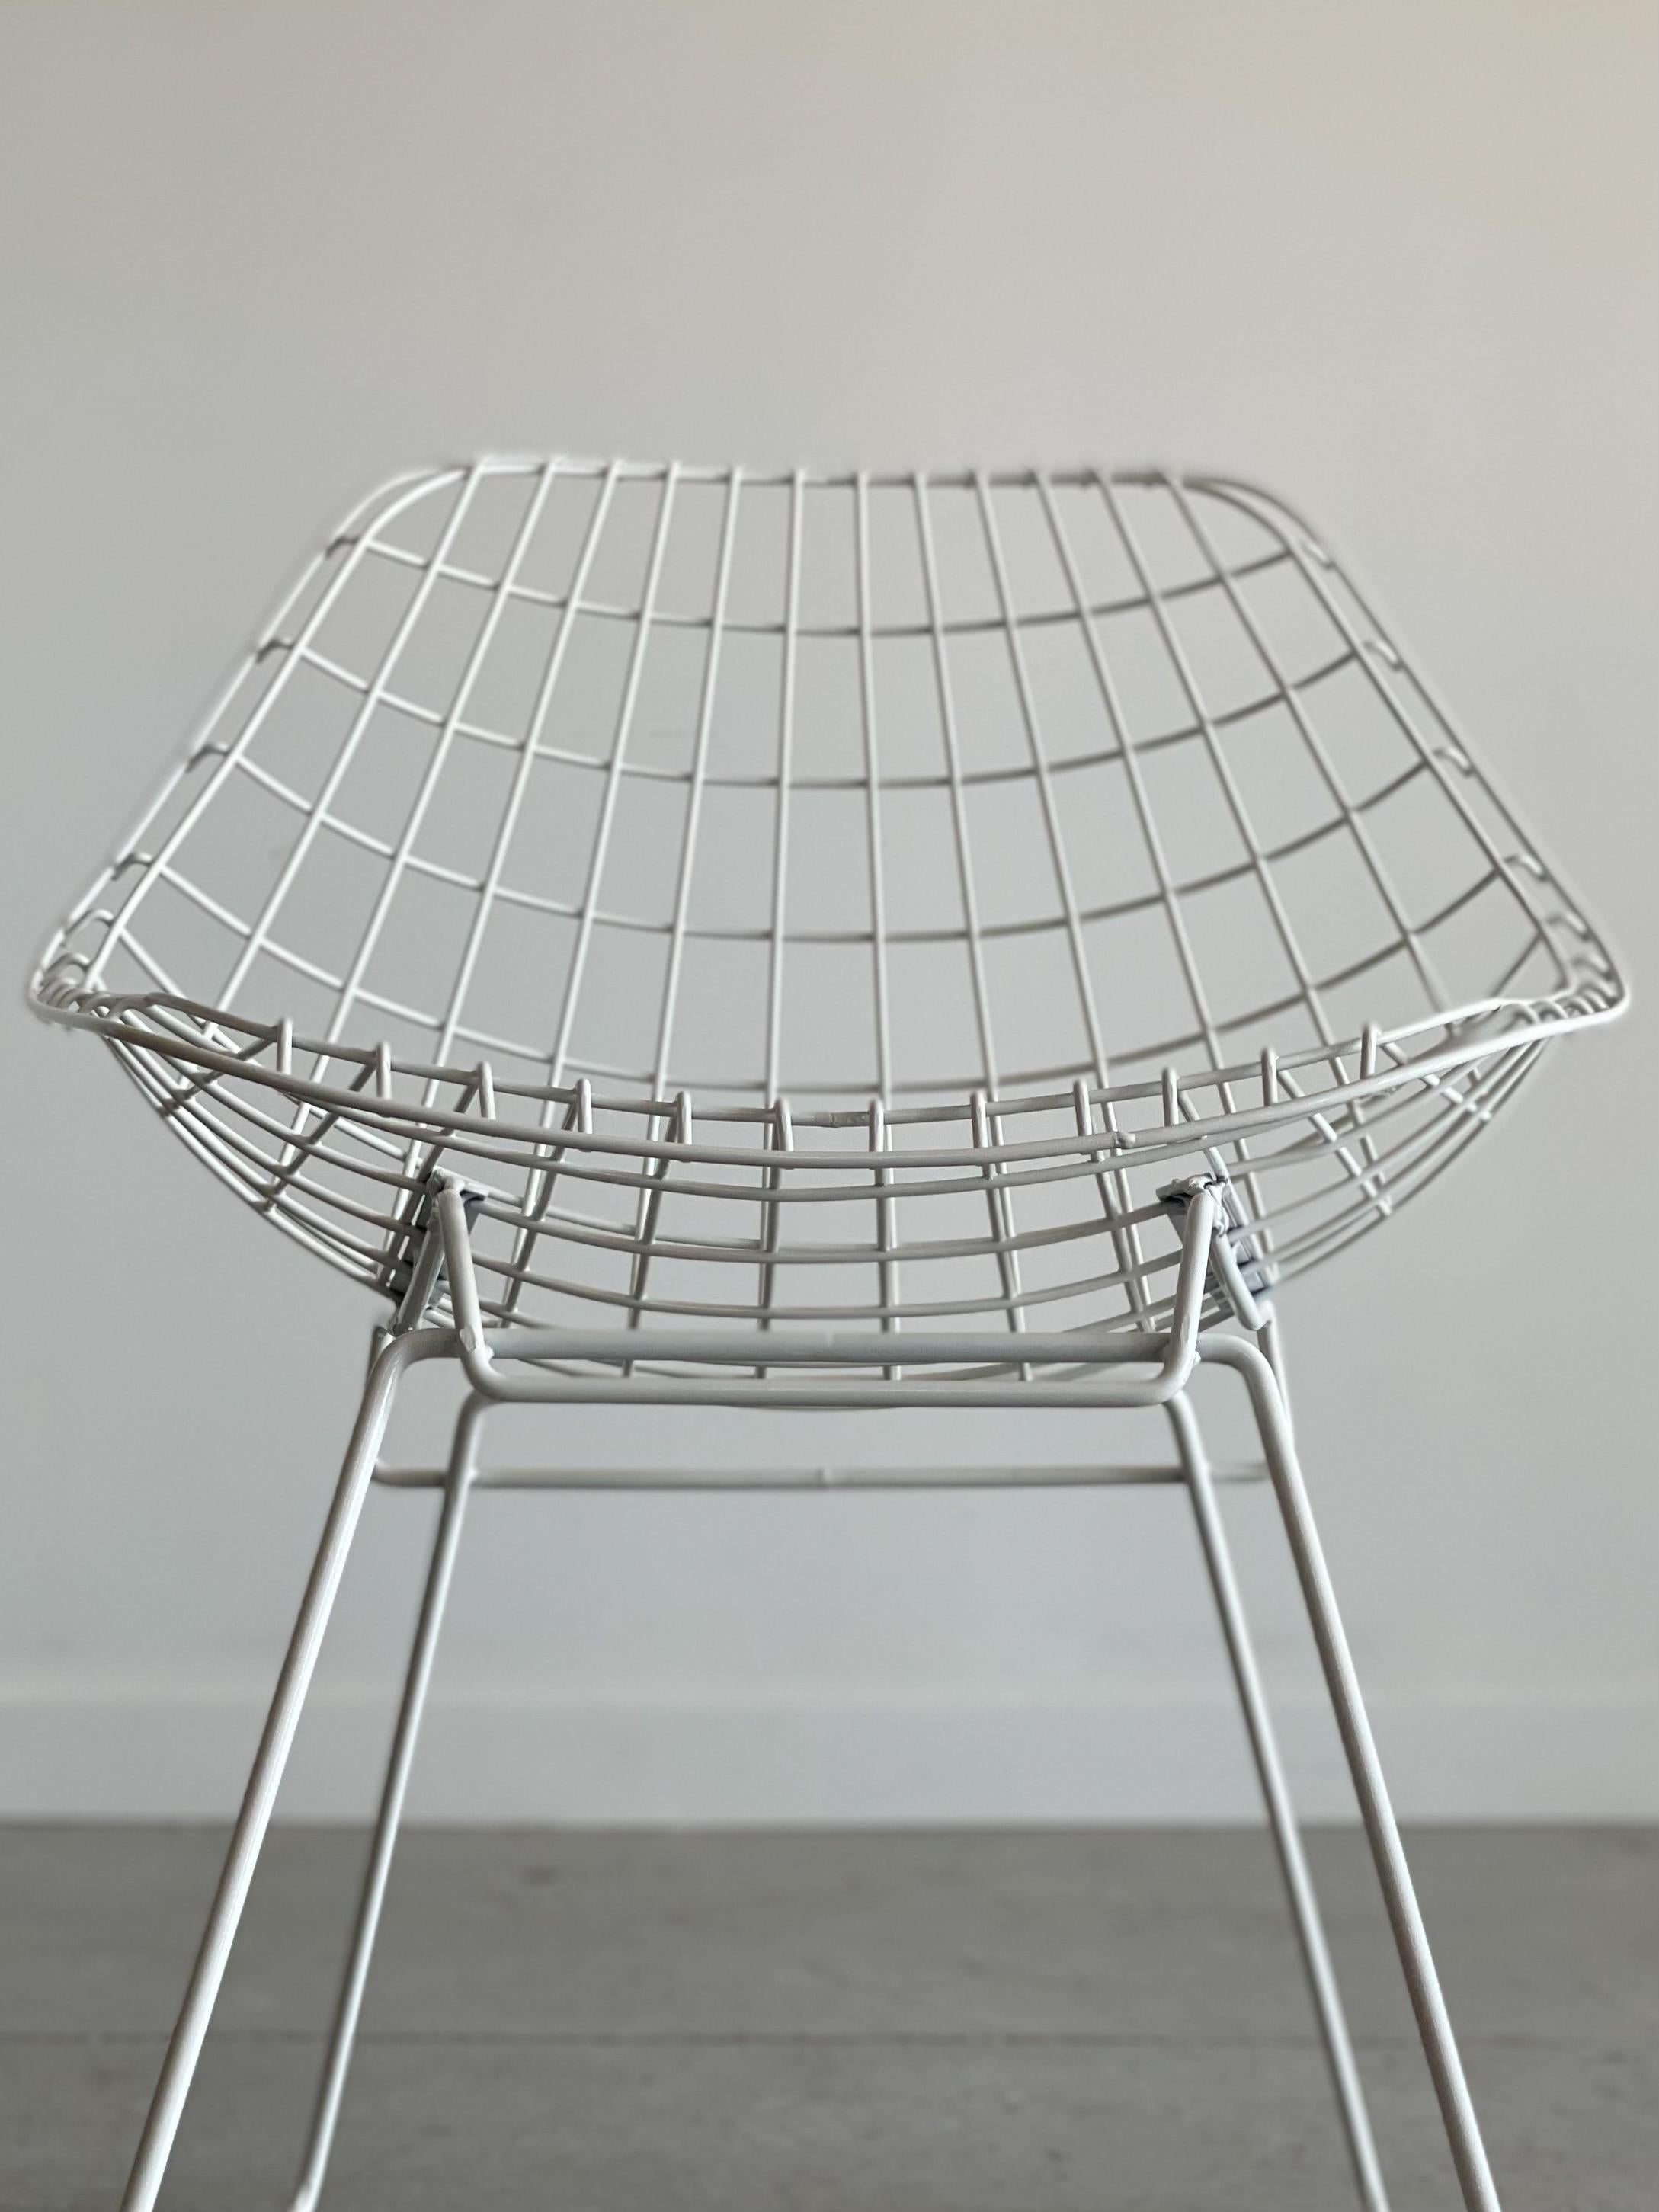 Magnifique chaise sculpturale en fil de fer conçue par Cees Braakman pour Pastoe, Pays-Bas. Cette pièce est composée d'un corps en treillis métallique reposant sur une base angulaire en forme de traîneau. Mesure 23